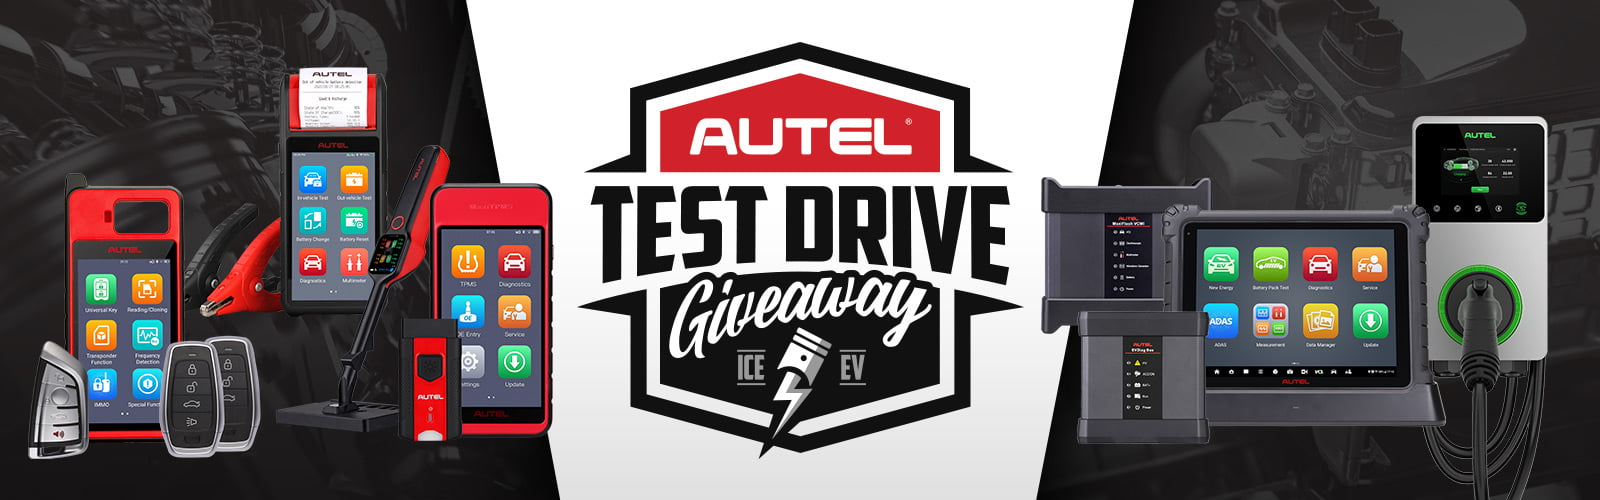 Autel Test Drive Giveaway